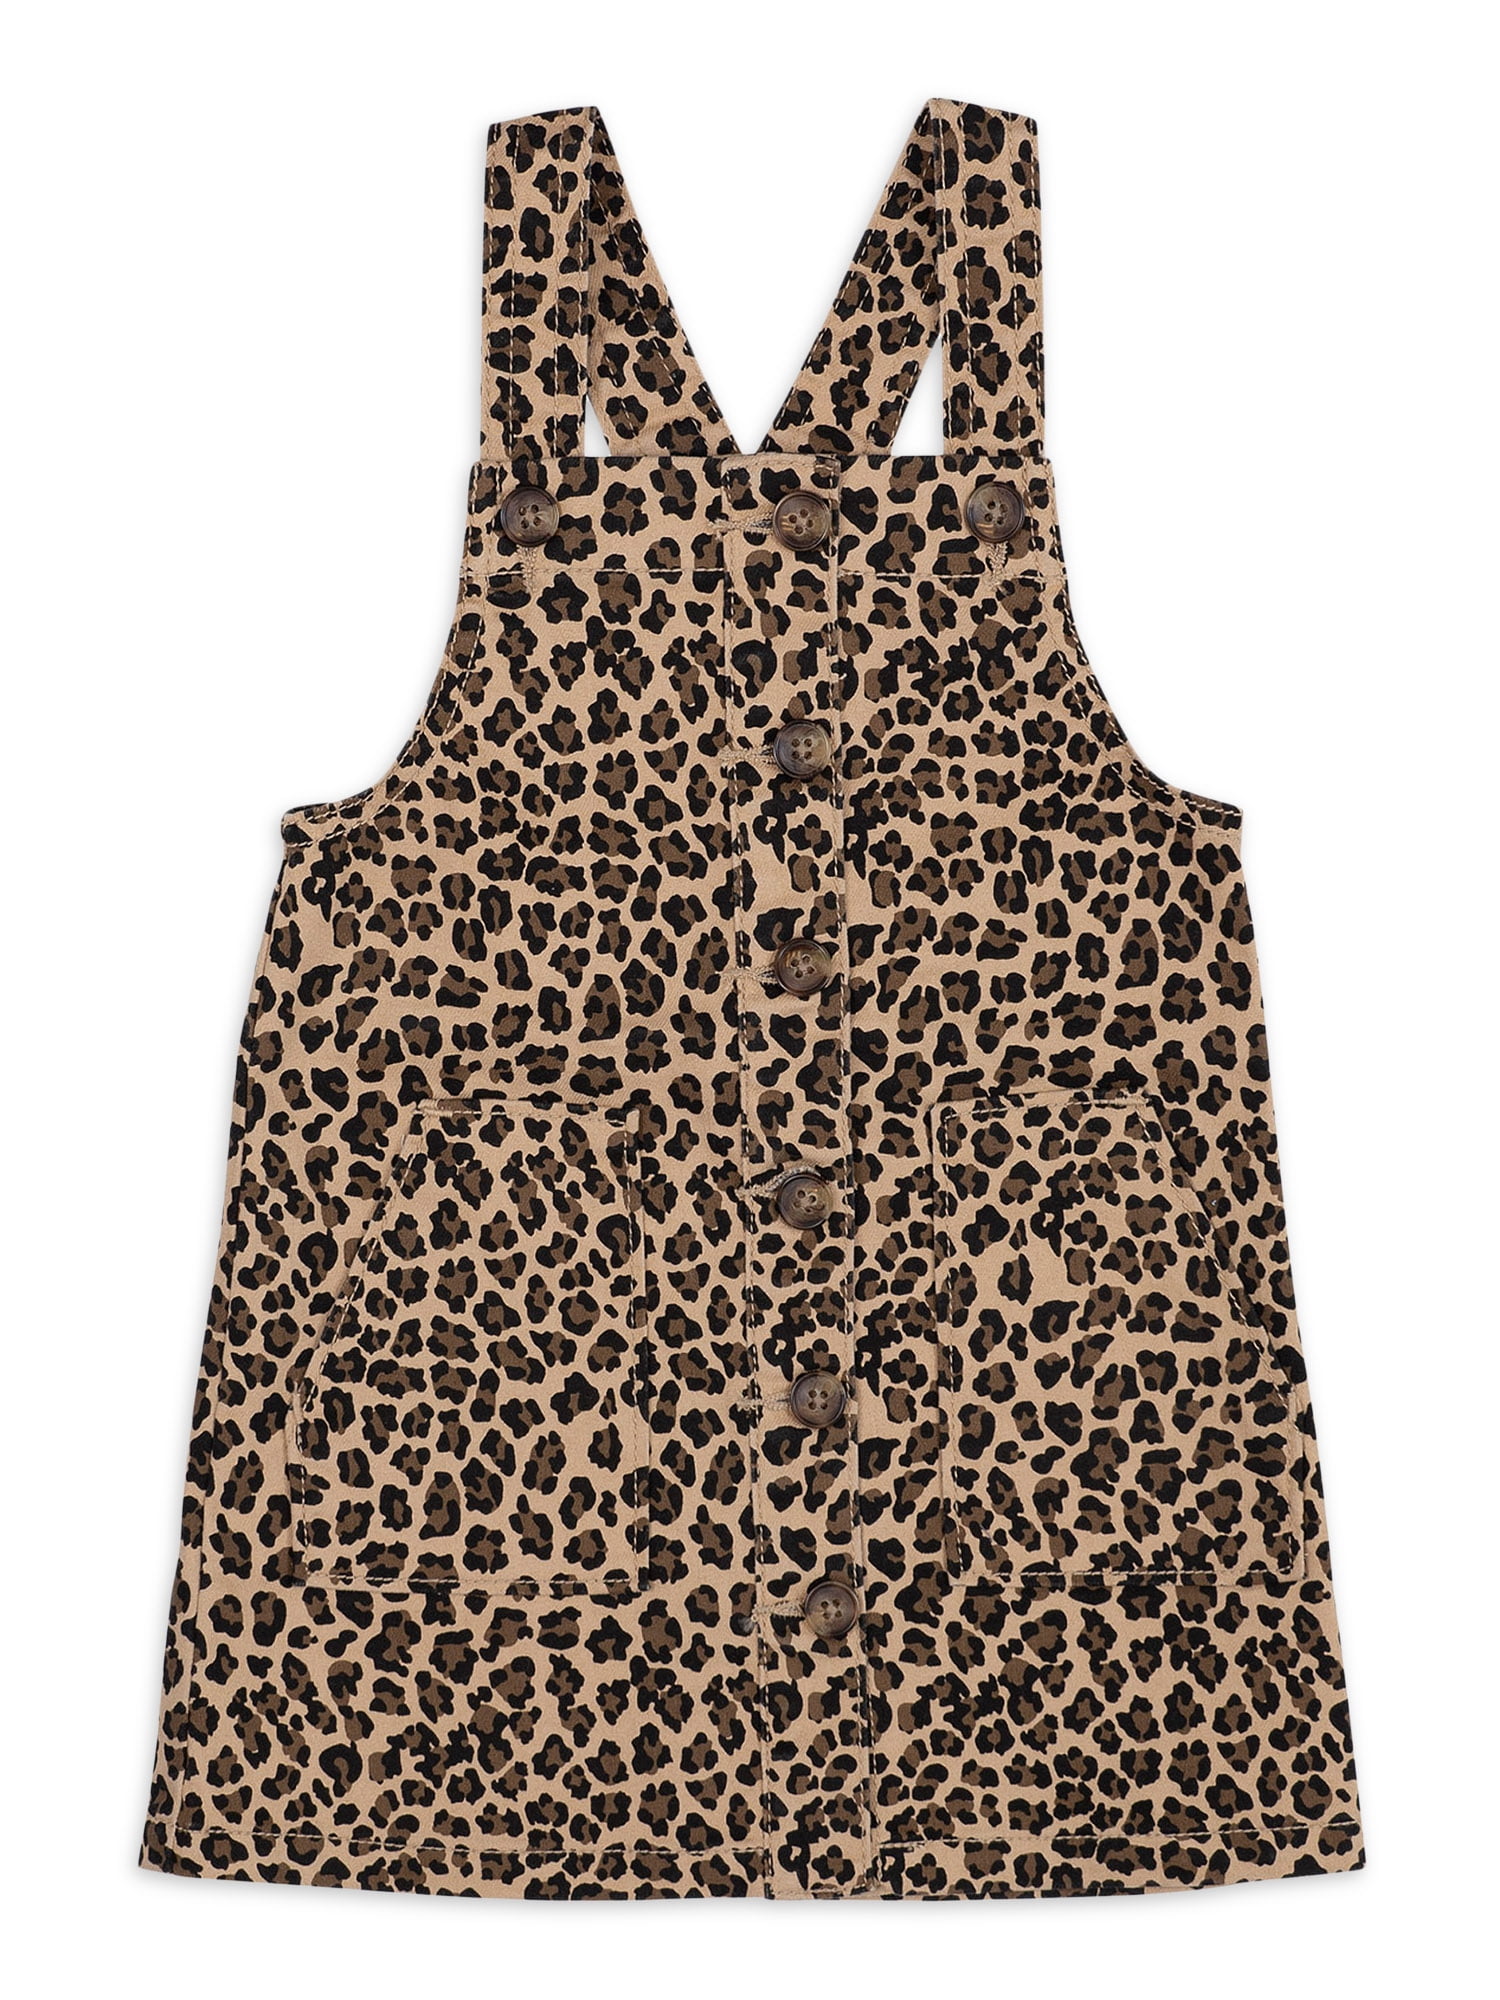 Juniors Girls Toddler Leopard Jumper Dress KD